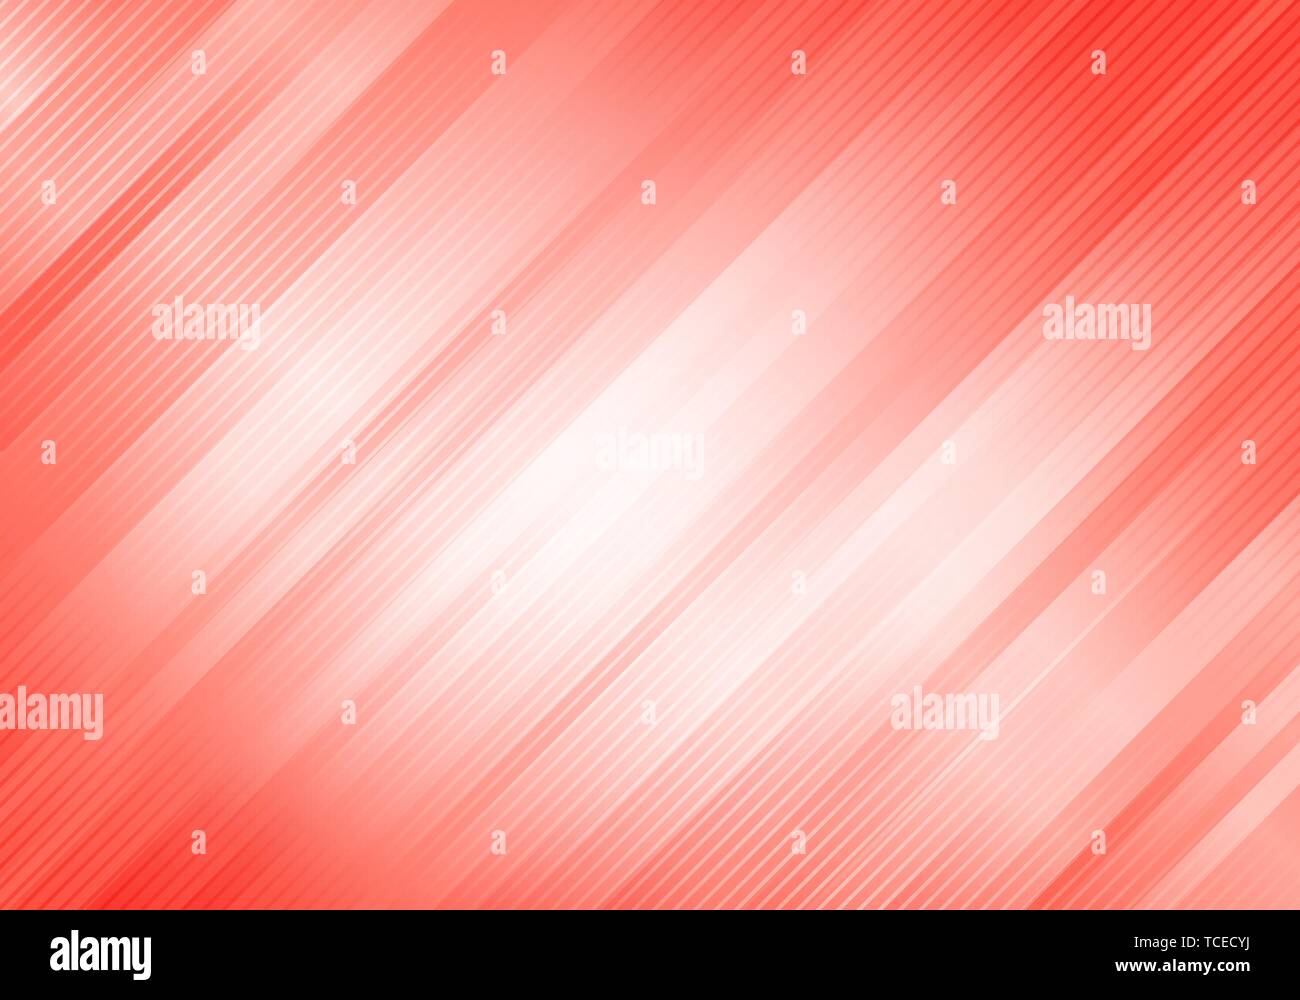 Résumé fond de couleur rose et blanc avec des rayures diagonales. Motif géométrique un minimum. Vous pouvez utiliser pour couvrir la conception, brochure, poster, publicité Illustration de Vecteur